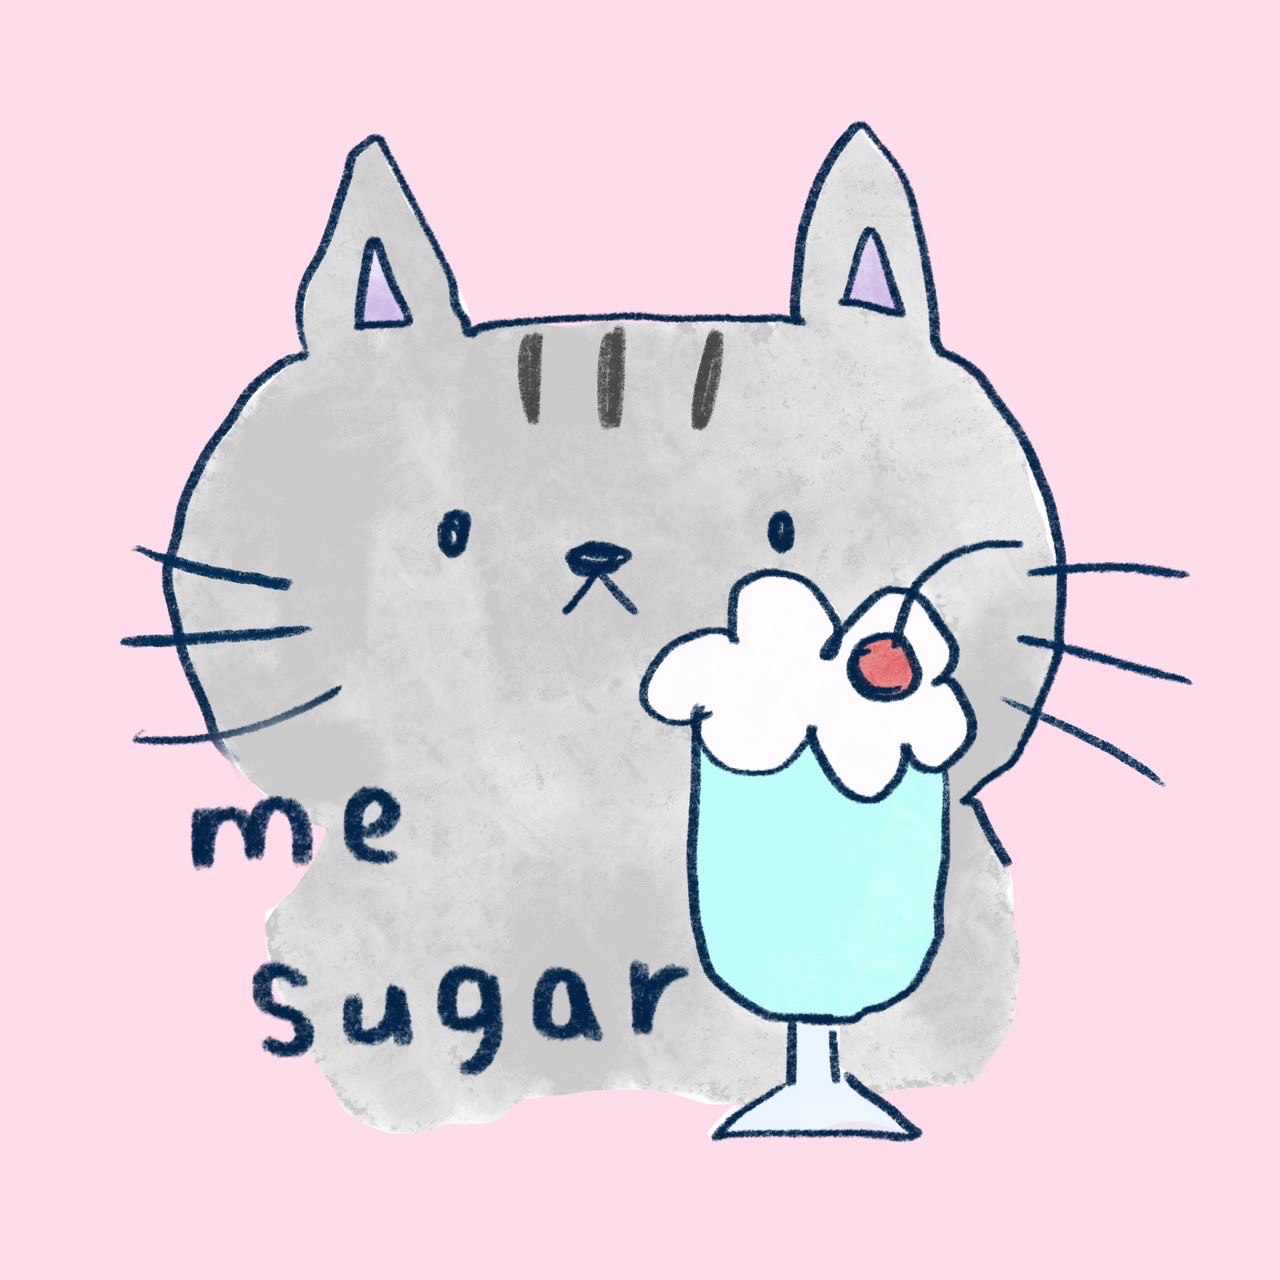 刺繍教室 me sugar